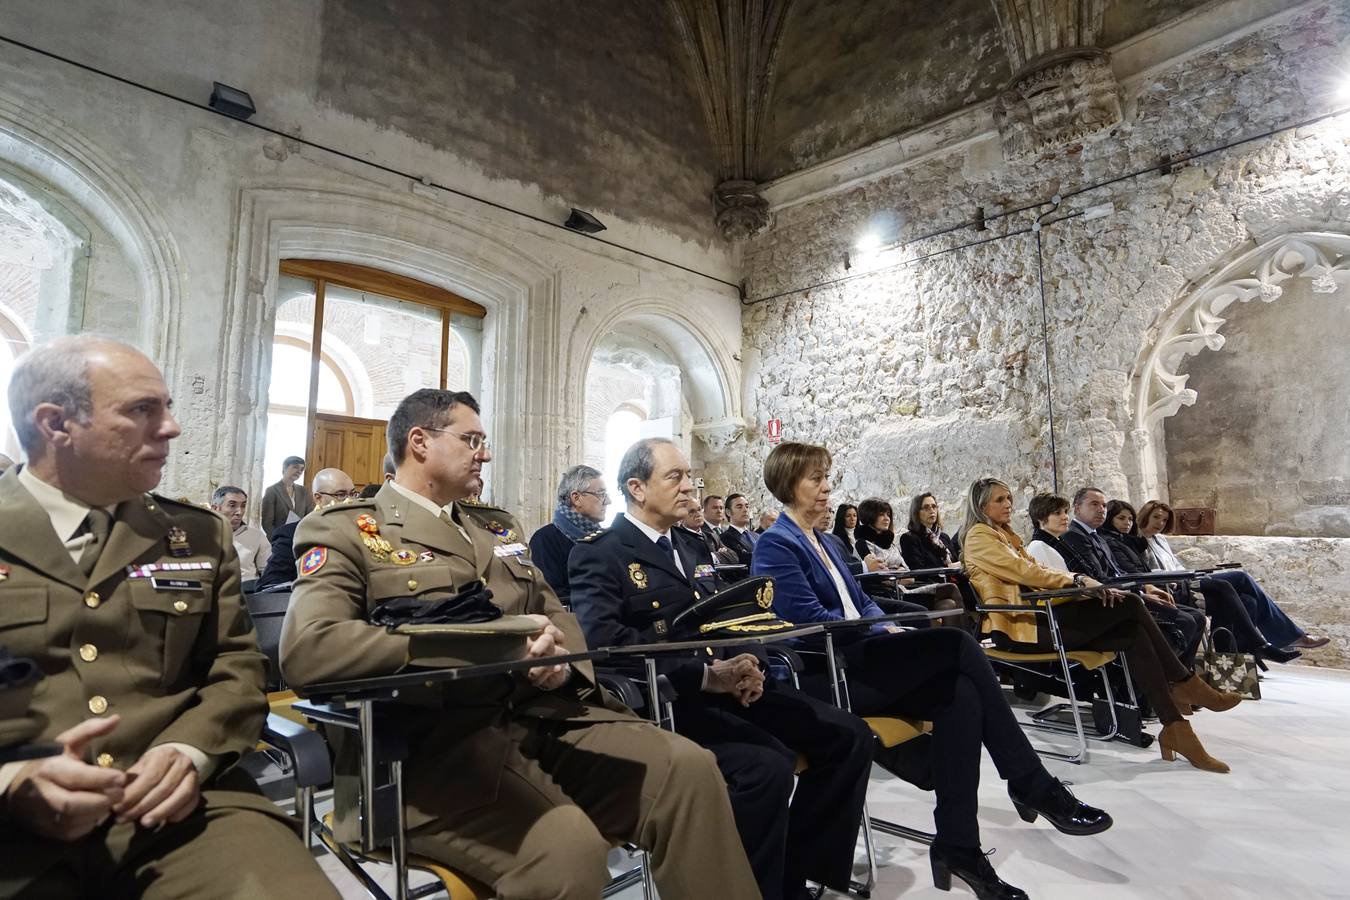 25 altos mandos policiales prcedentes de toda España participarán durante cinco meses en la sexta edición del Curso Superior de Gestión organizado por IE University